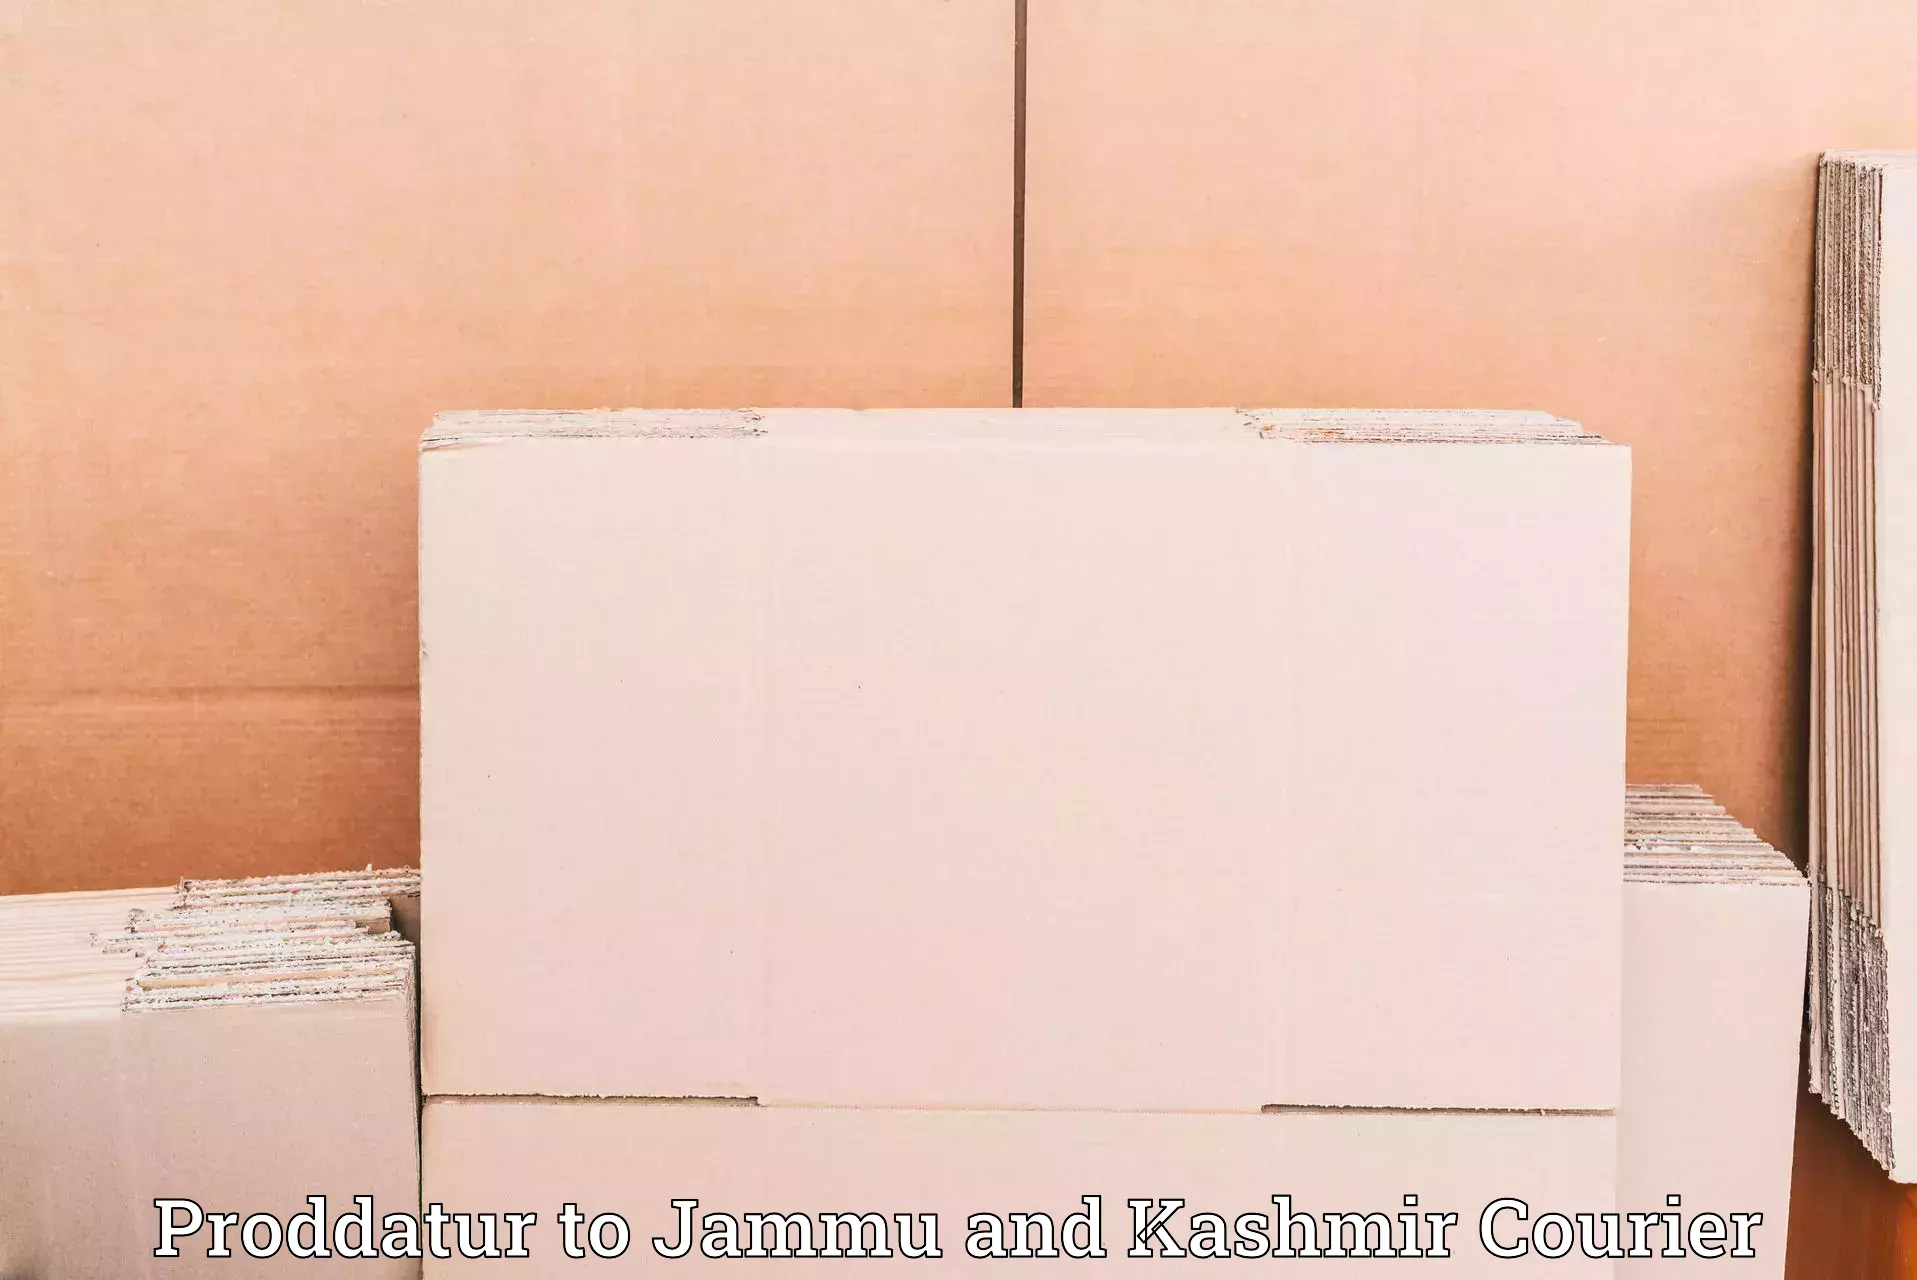 Next-generation courier services Proddatur to Kishtwar